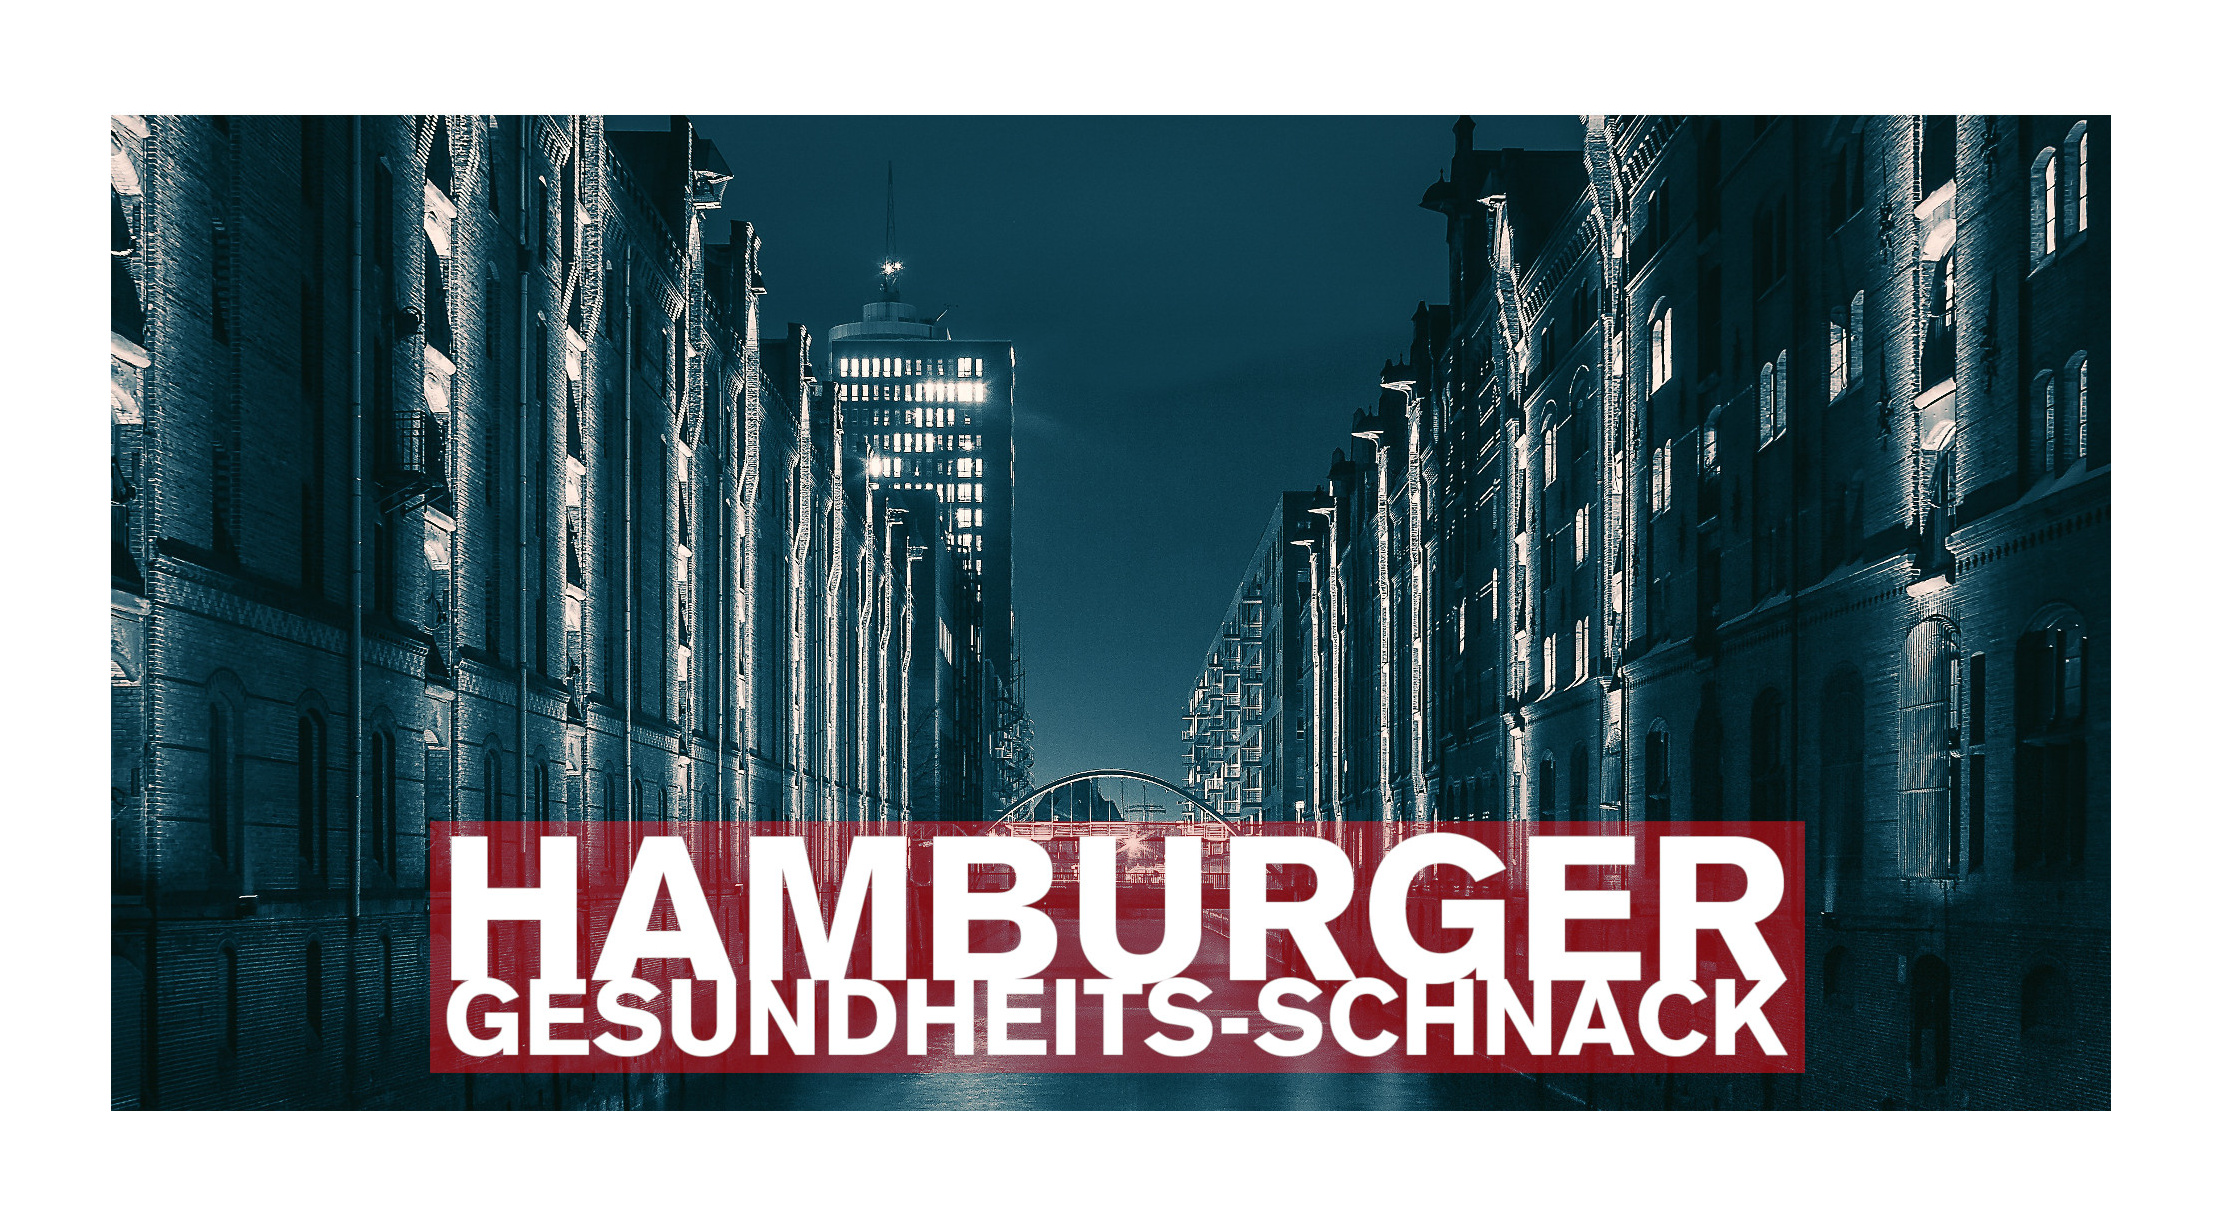 Hamburger Gesundheits-Schnack